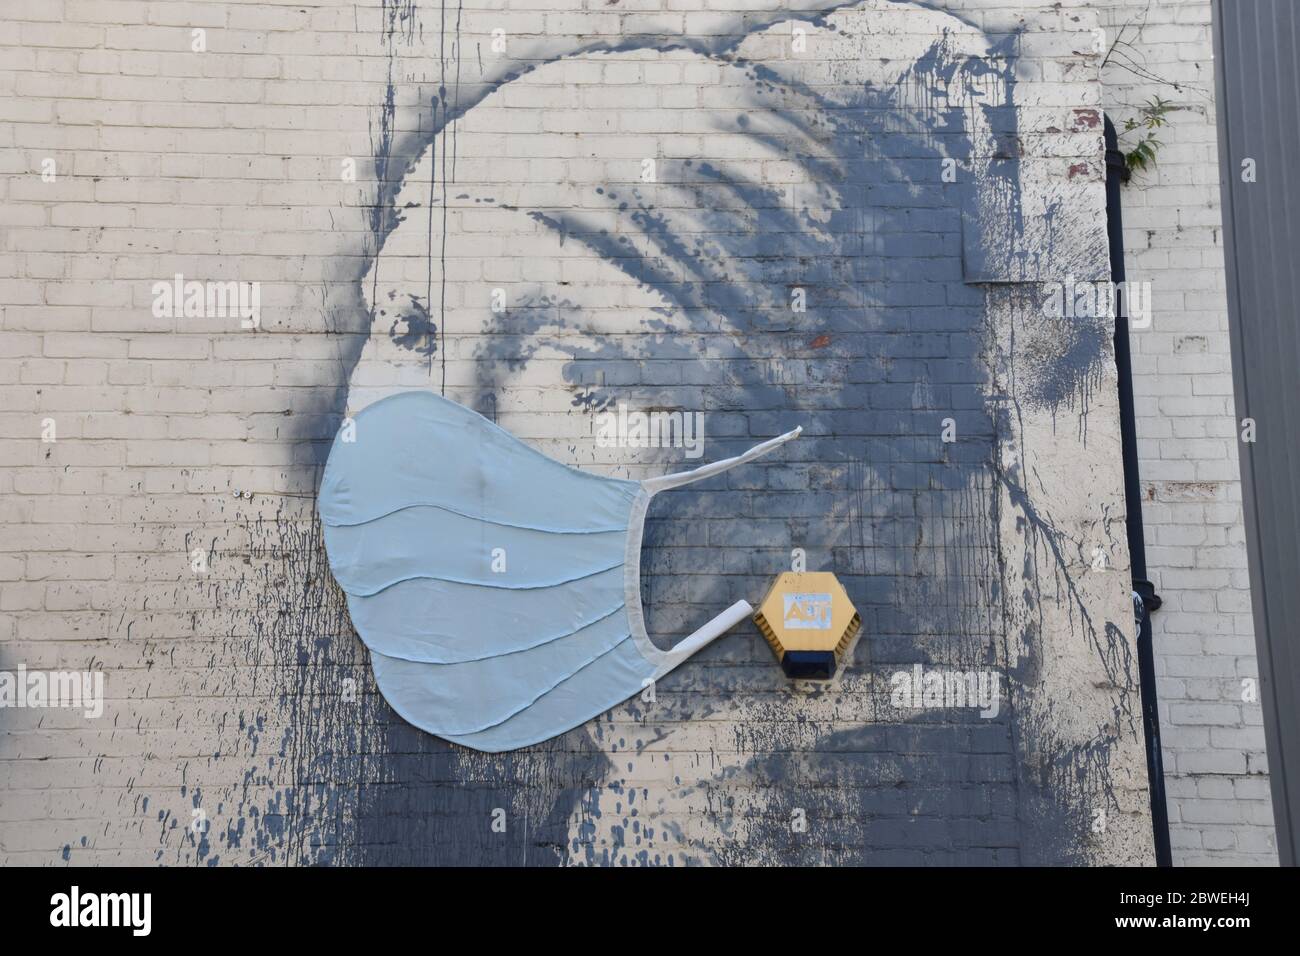 Graffitis Banksy la fille avec le tympan percé avec masque bleu (Covid-19). Albion Dockyard, Hanover place, Bristol Banque D'Images